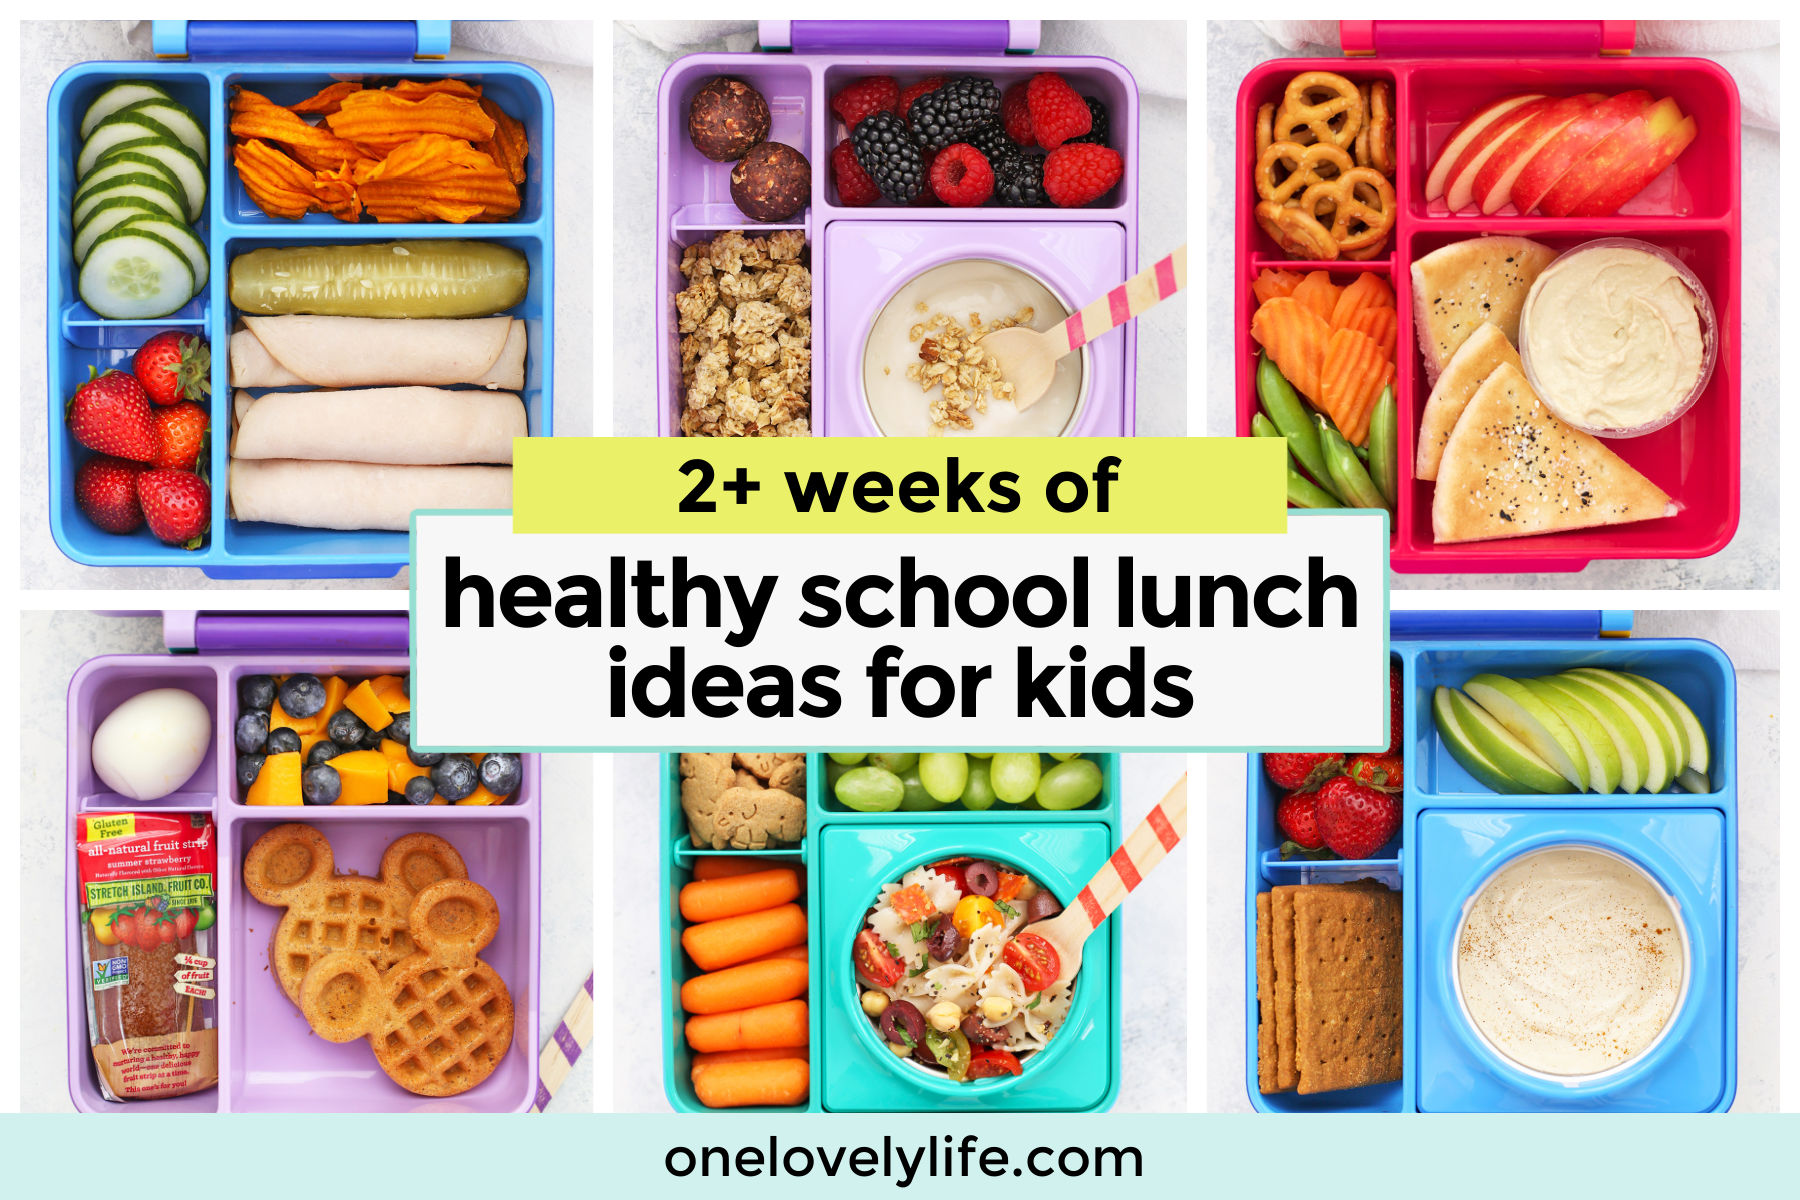 50+ School Lunch Ideas, Healthy & Easy School Lunches